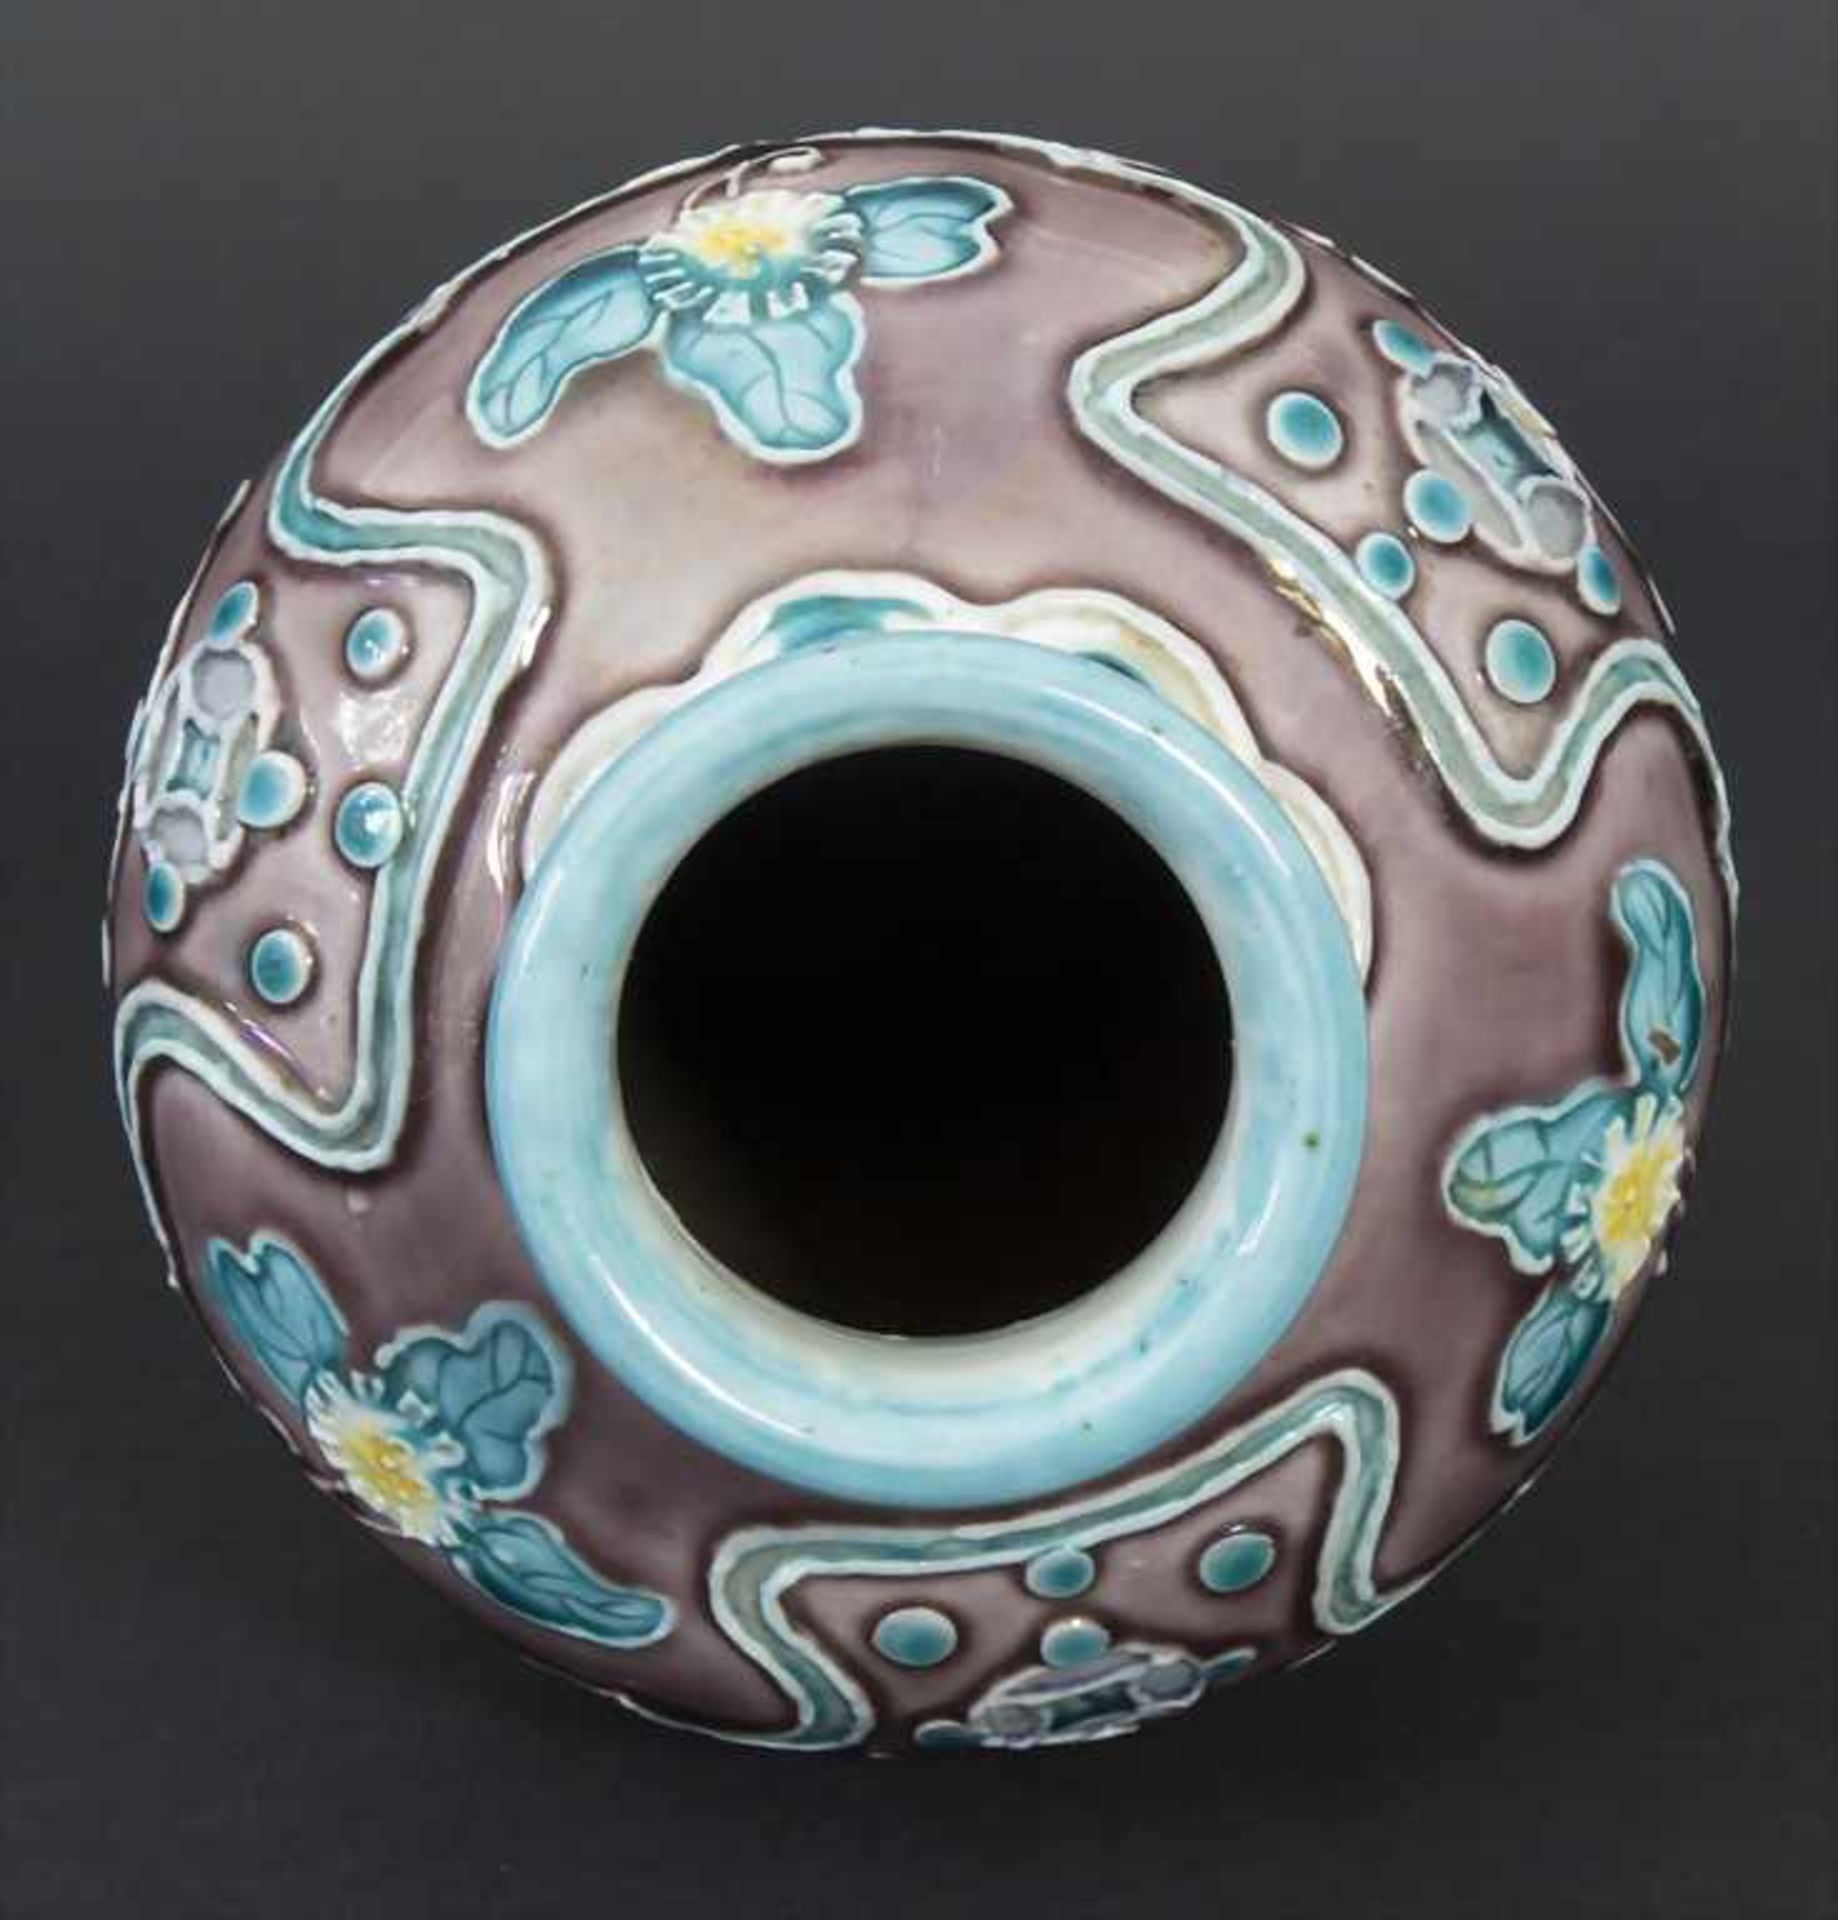 Fahua-Vase, China, wohl 18./19. Jh.Material: Bisquitporzellan, Auflagen in Fahuatechnik, polychrom - Bild 4 aus 7